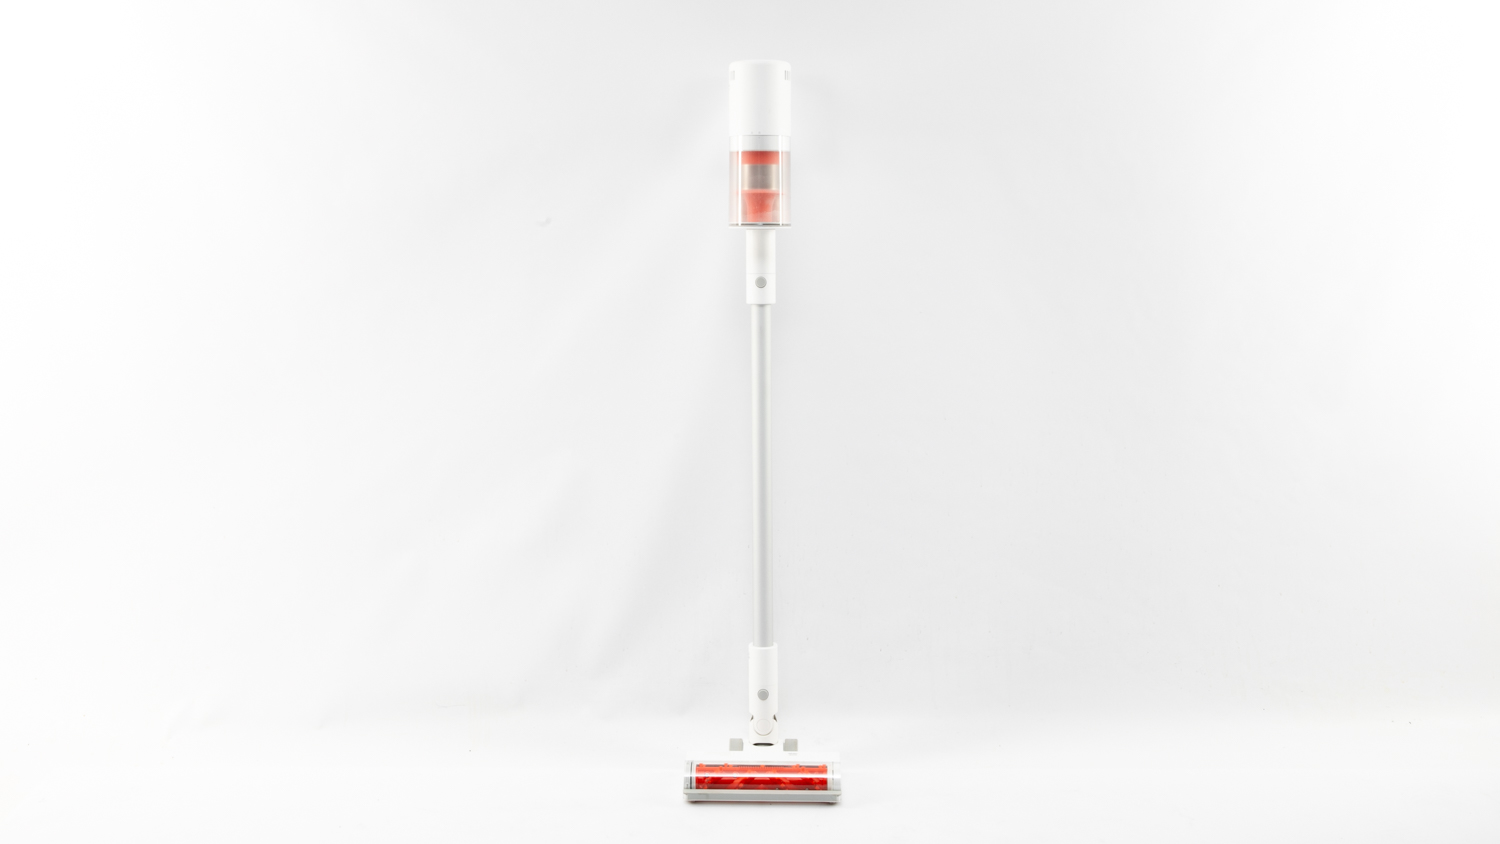 Xiaomi Mi Vacuum Cleaner G11 - Cordless/Bagless Vacuum Cleaner